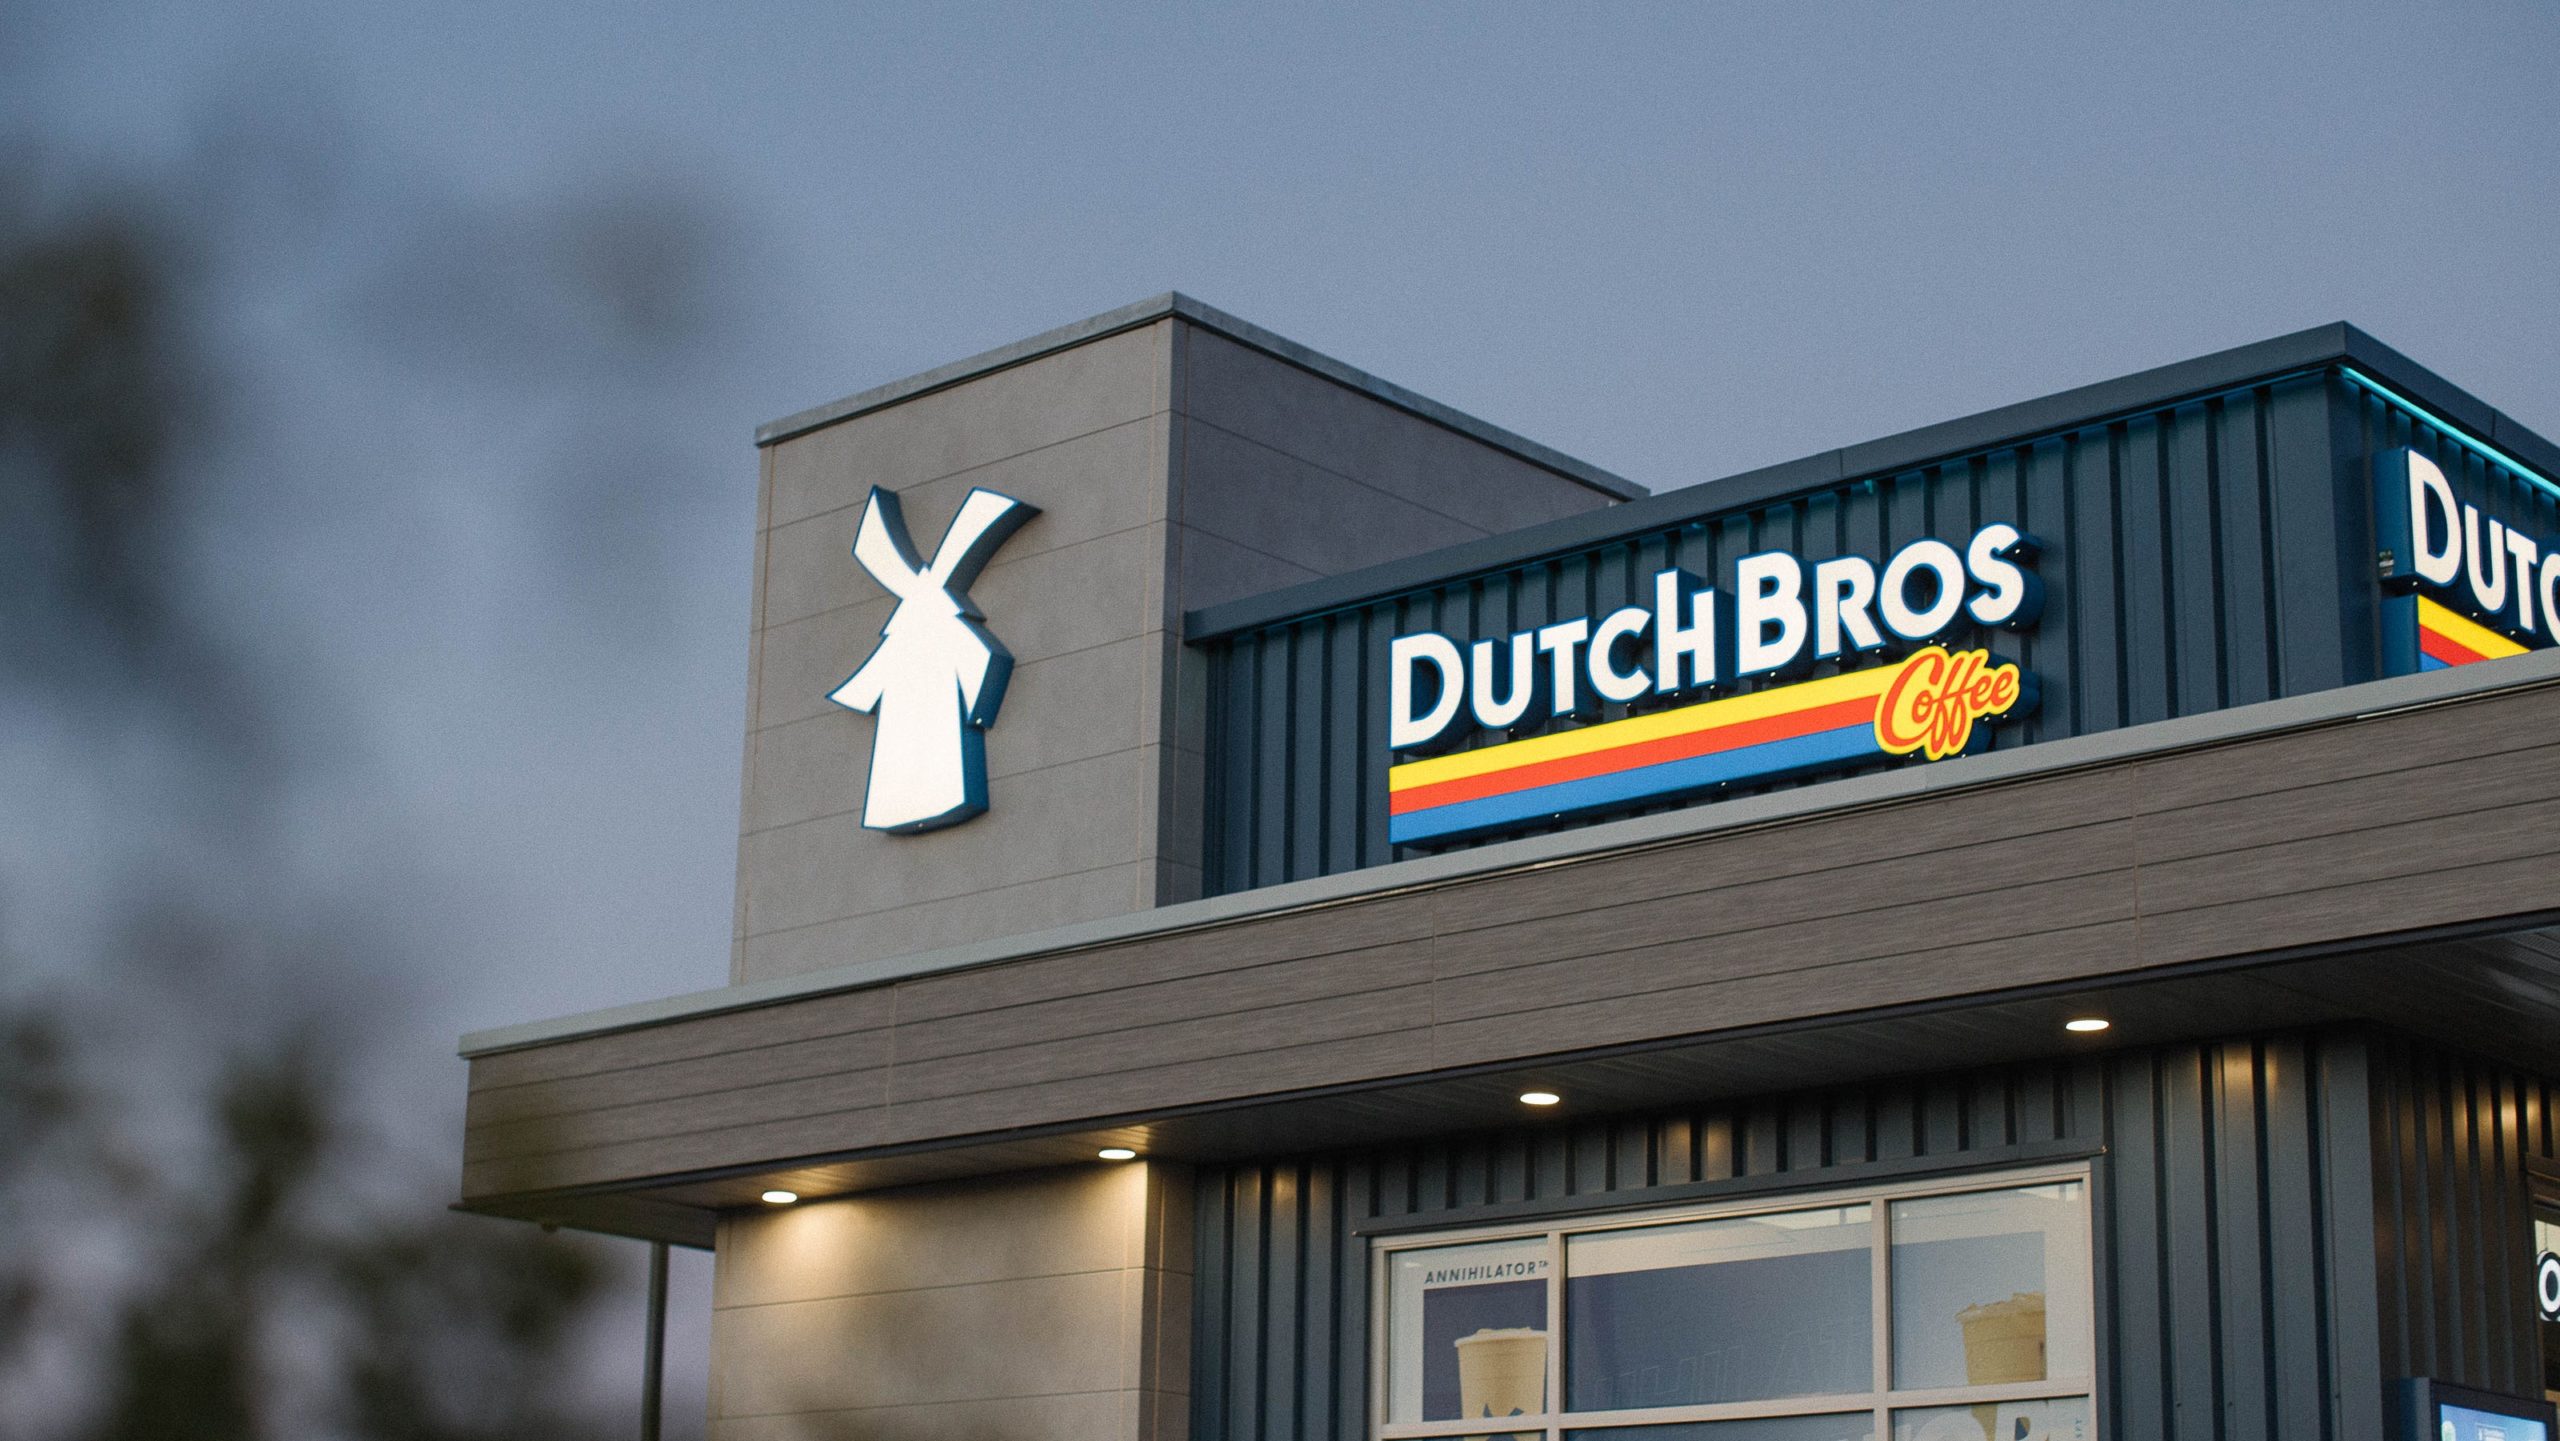 Dutch Bros Planning Second Drive-Thru Coffee Shop in McKinney